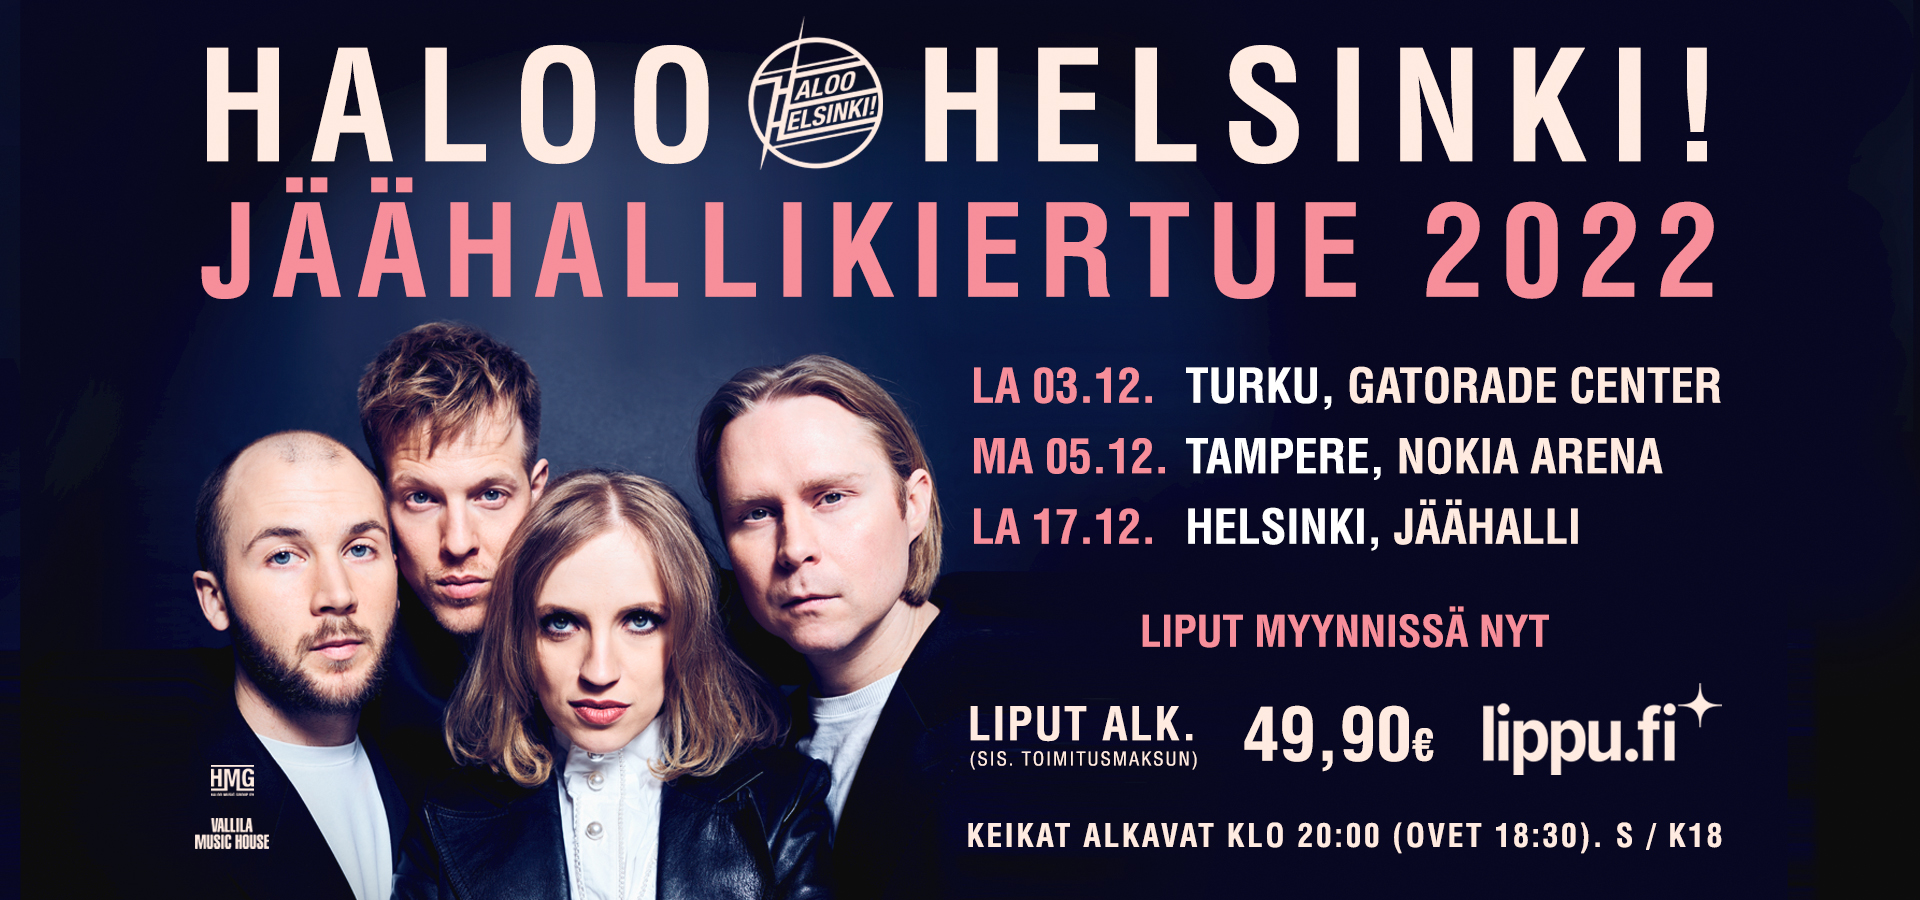 Etusivu - Haloo Helsinki!